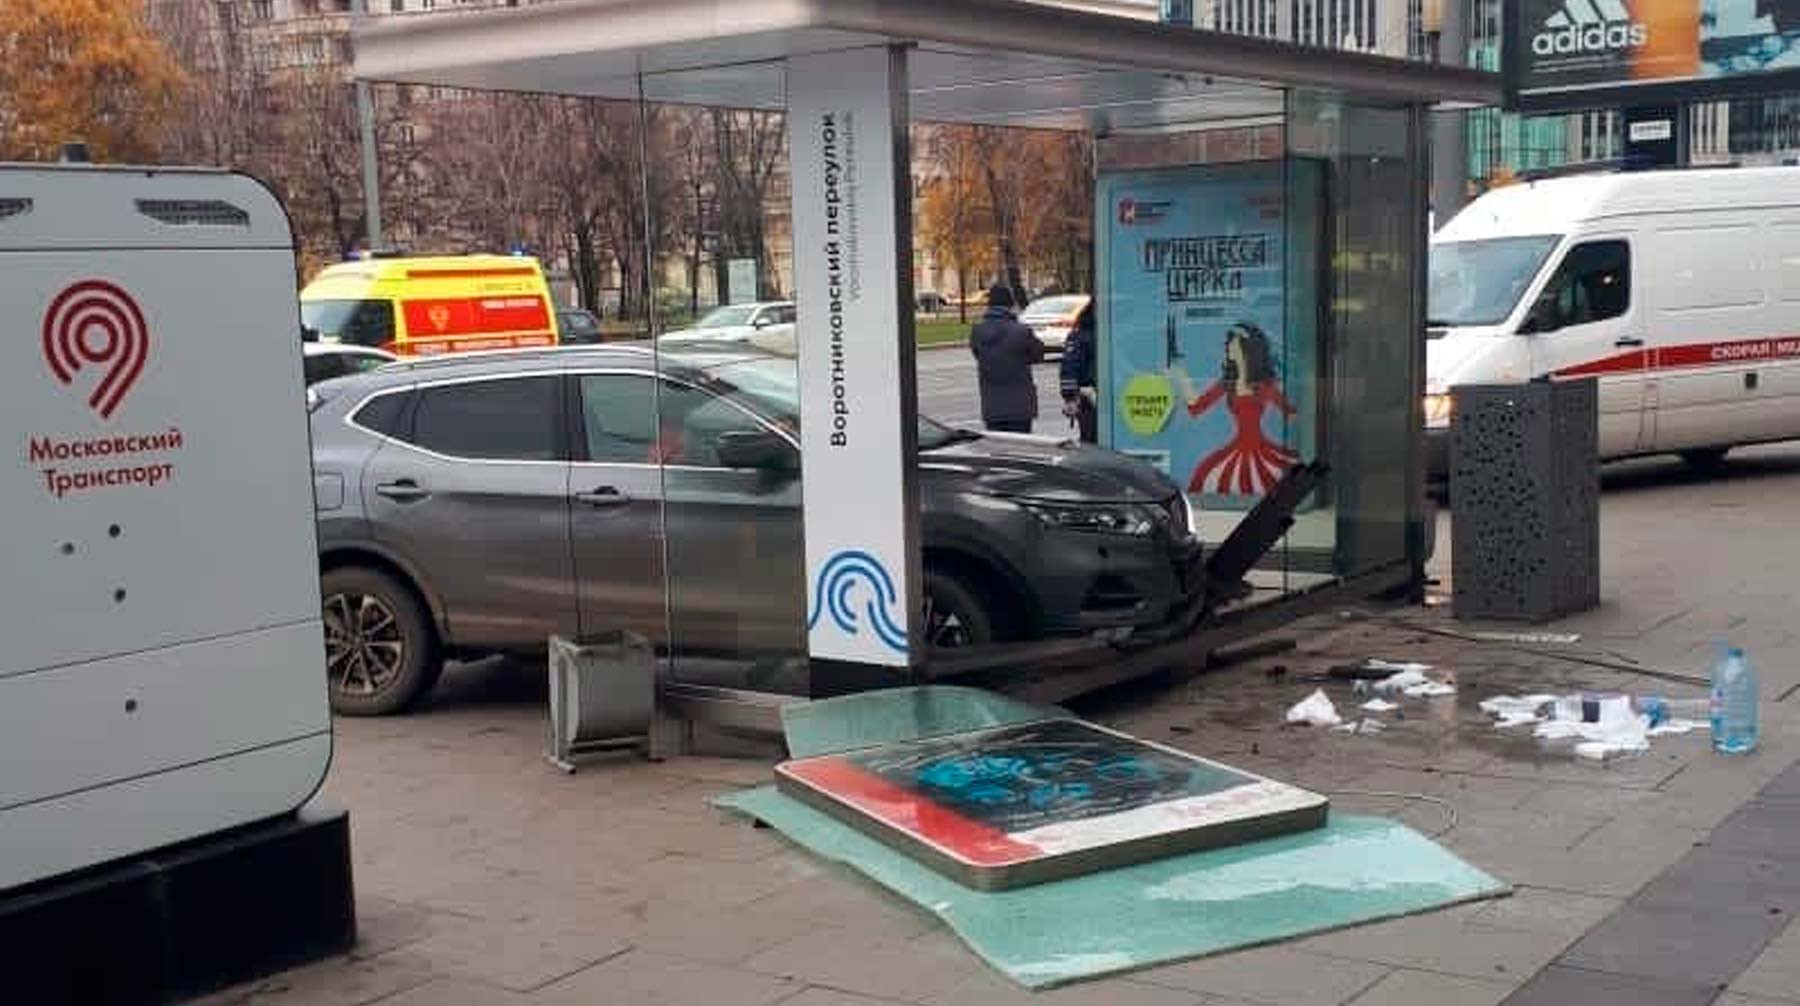 Dailystorm - В центре Москвы автомобиль въехал в остановку с людьми